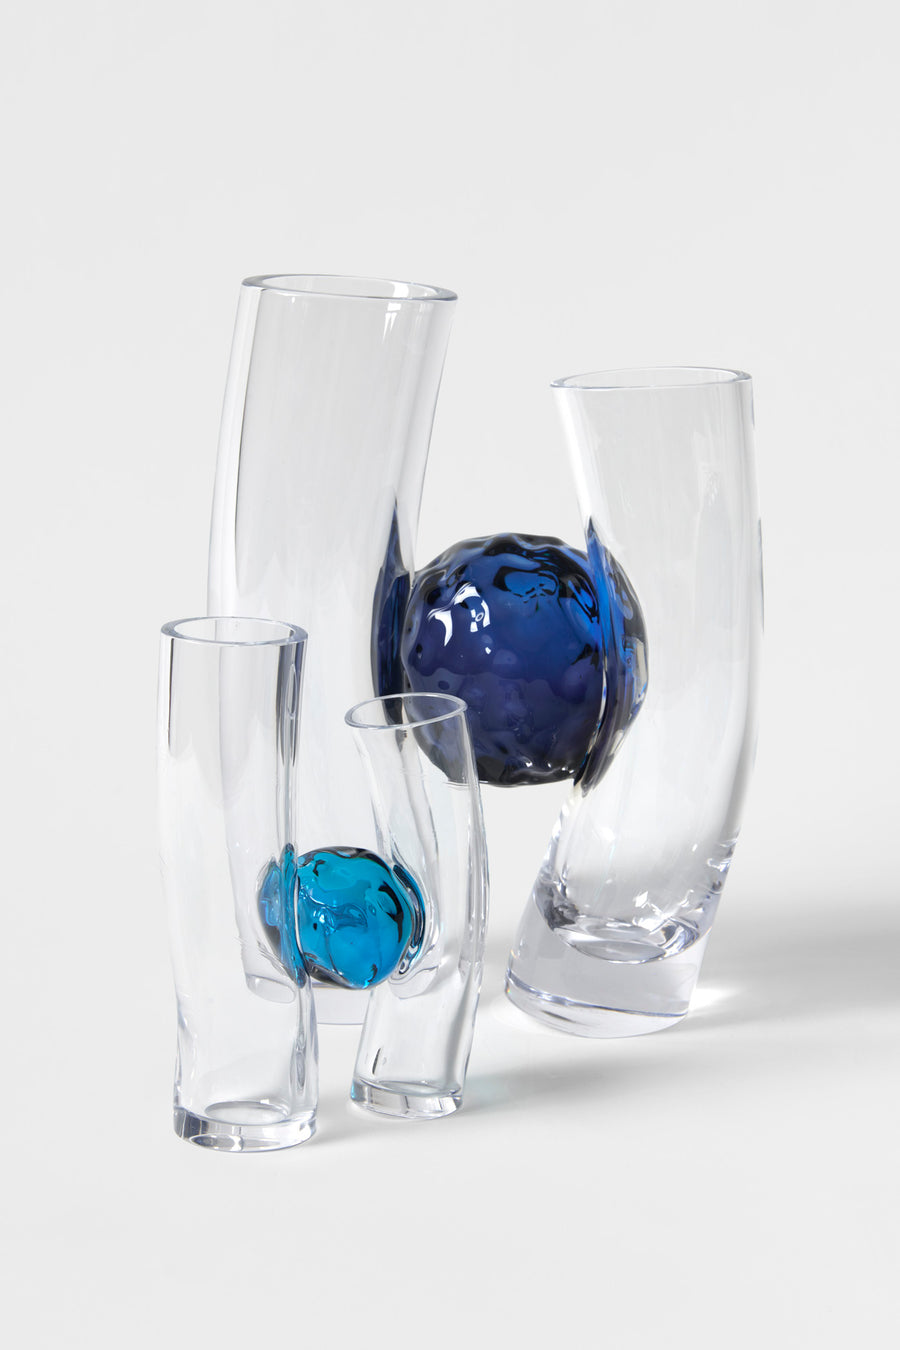 Flavie Audi artist glass blowing glass vase les vases communiquant turquoise deep blue series